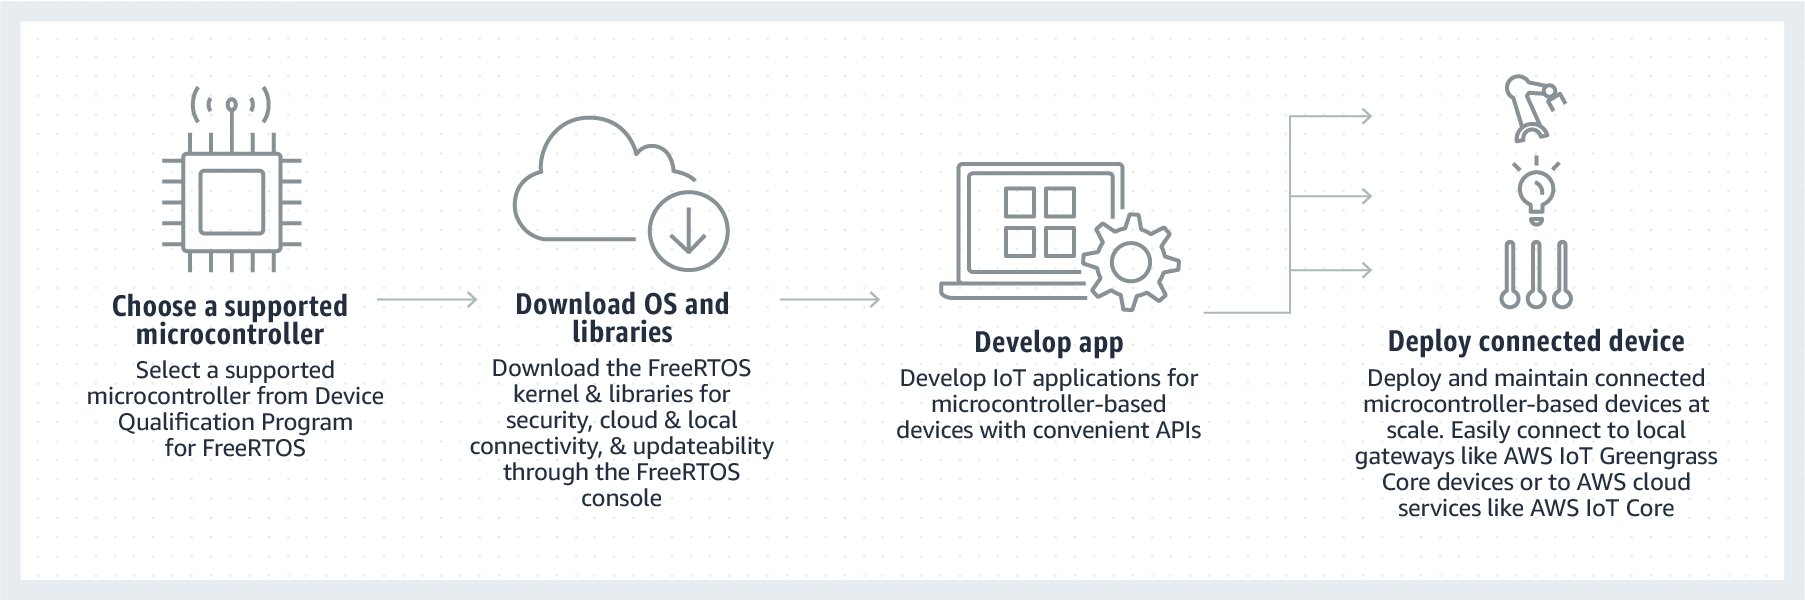 FreeRTOS を使用してモノのインターネット (IoT) アプリケーションを開発およびデプロイするステップを示すフローチャート。